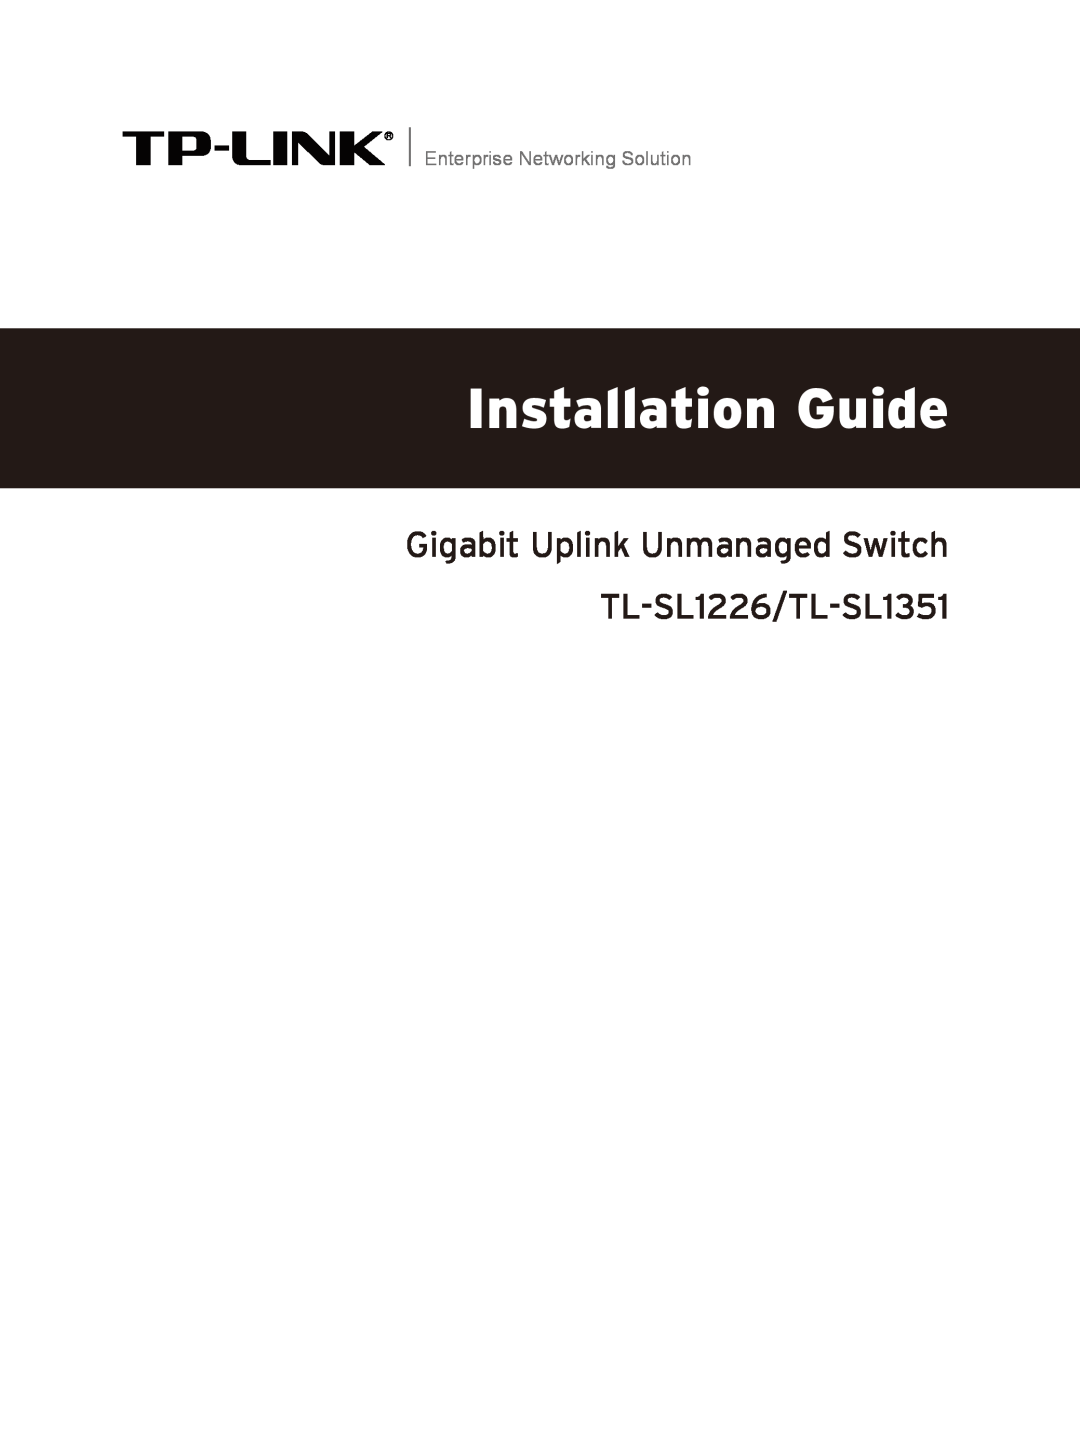 TP-Link manual Installation Guide, Gigabit Uplink Unmanaged Switch TL-SL1226/TL-SL1351, Enterprise Networking Solution 